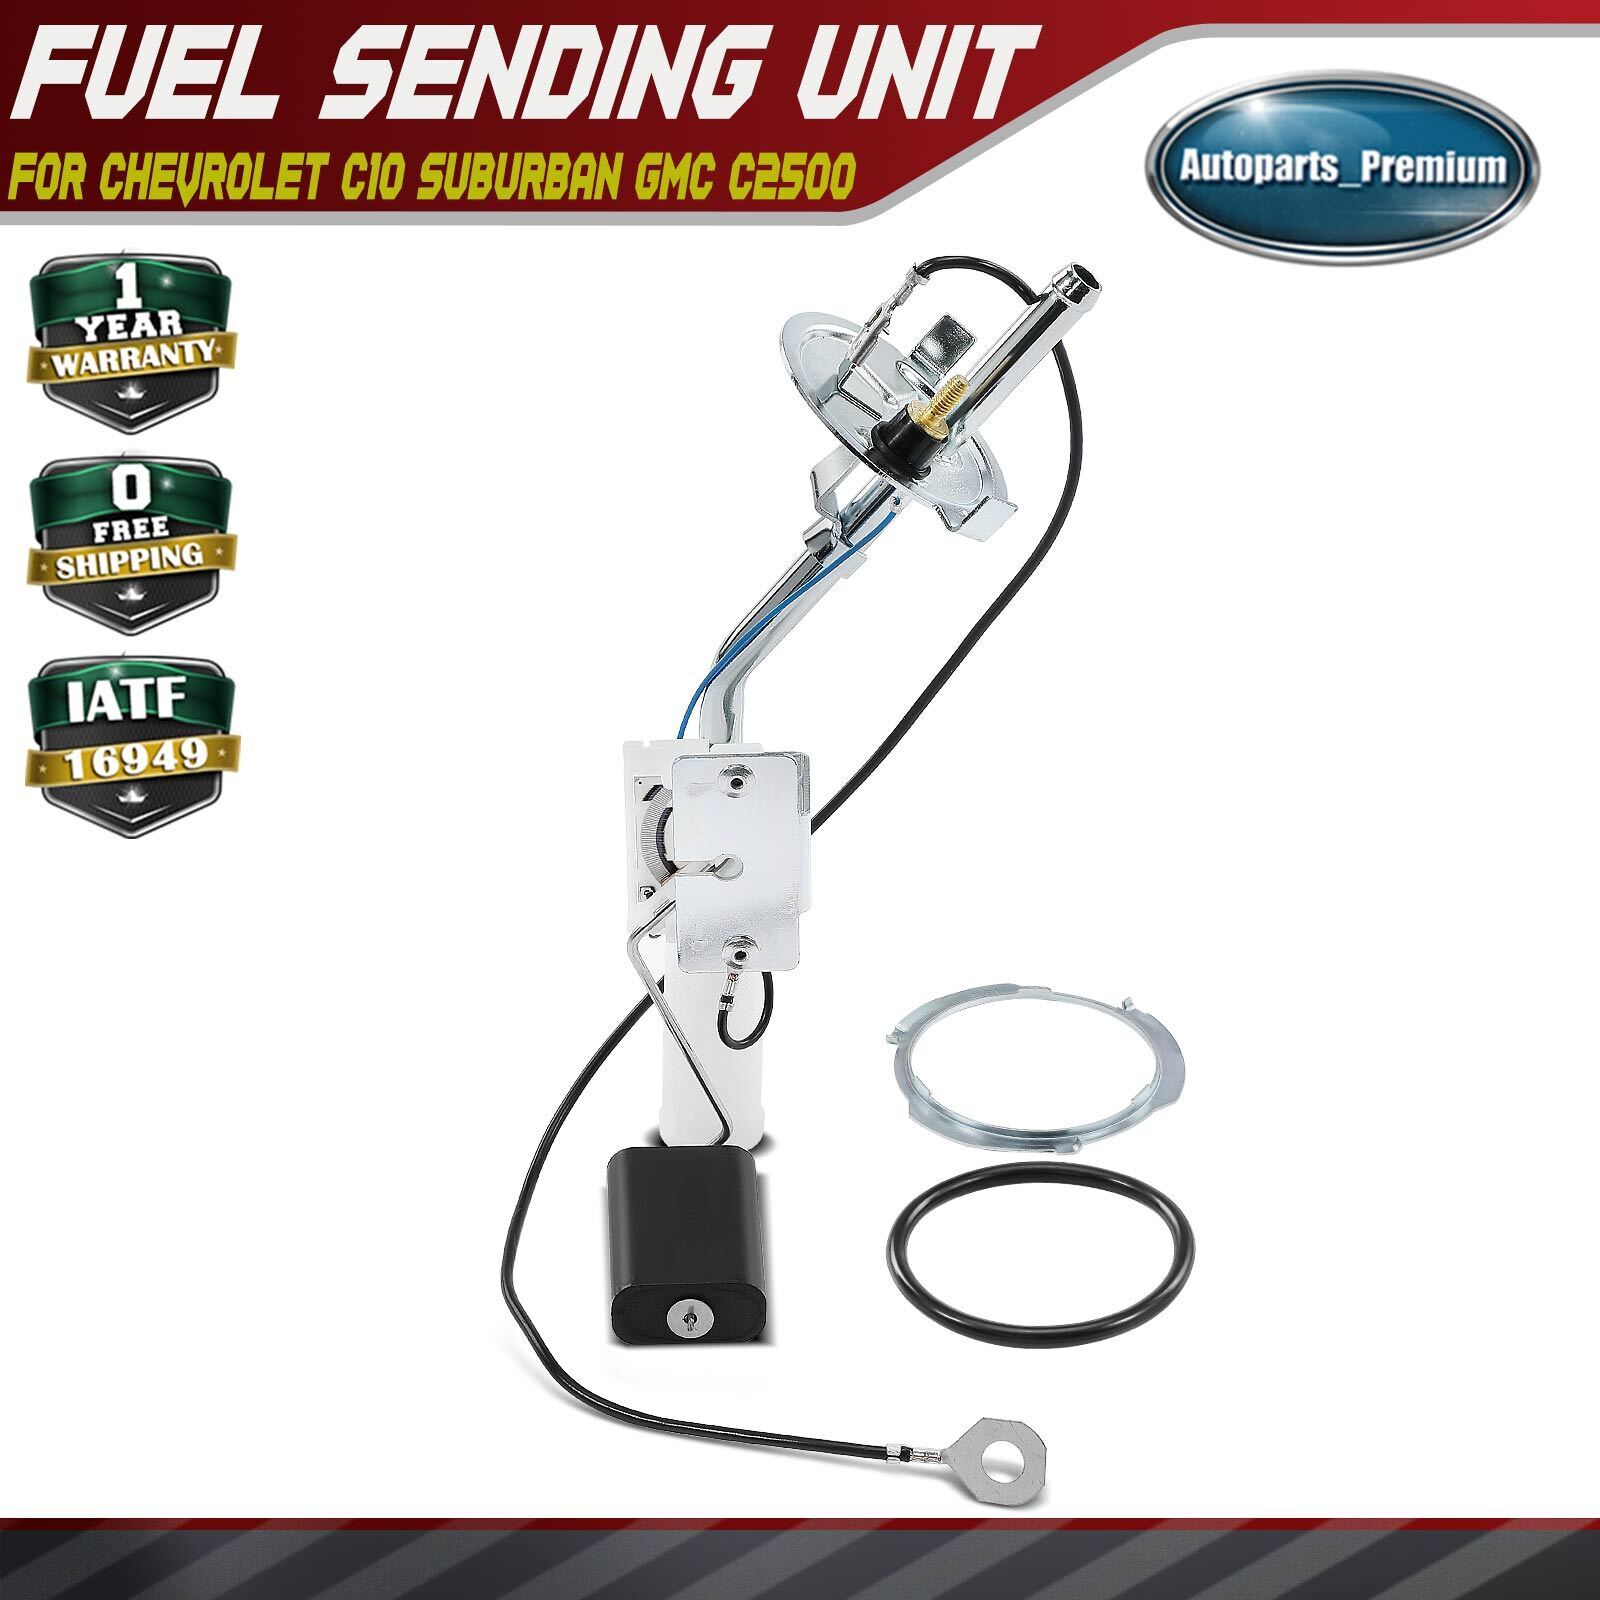 Fuel Tank Sending Unit for Buick Skylark Chevrolet Chevelle Oldsmobile Pontiac